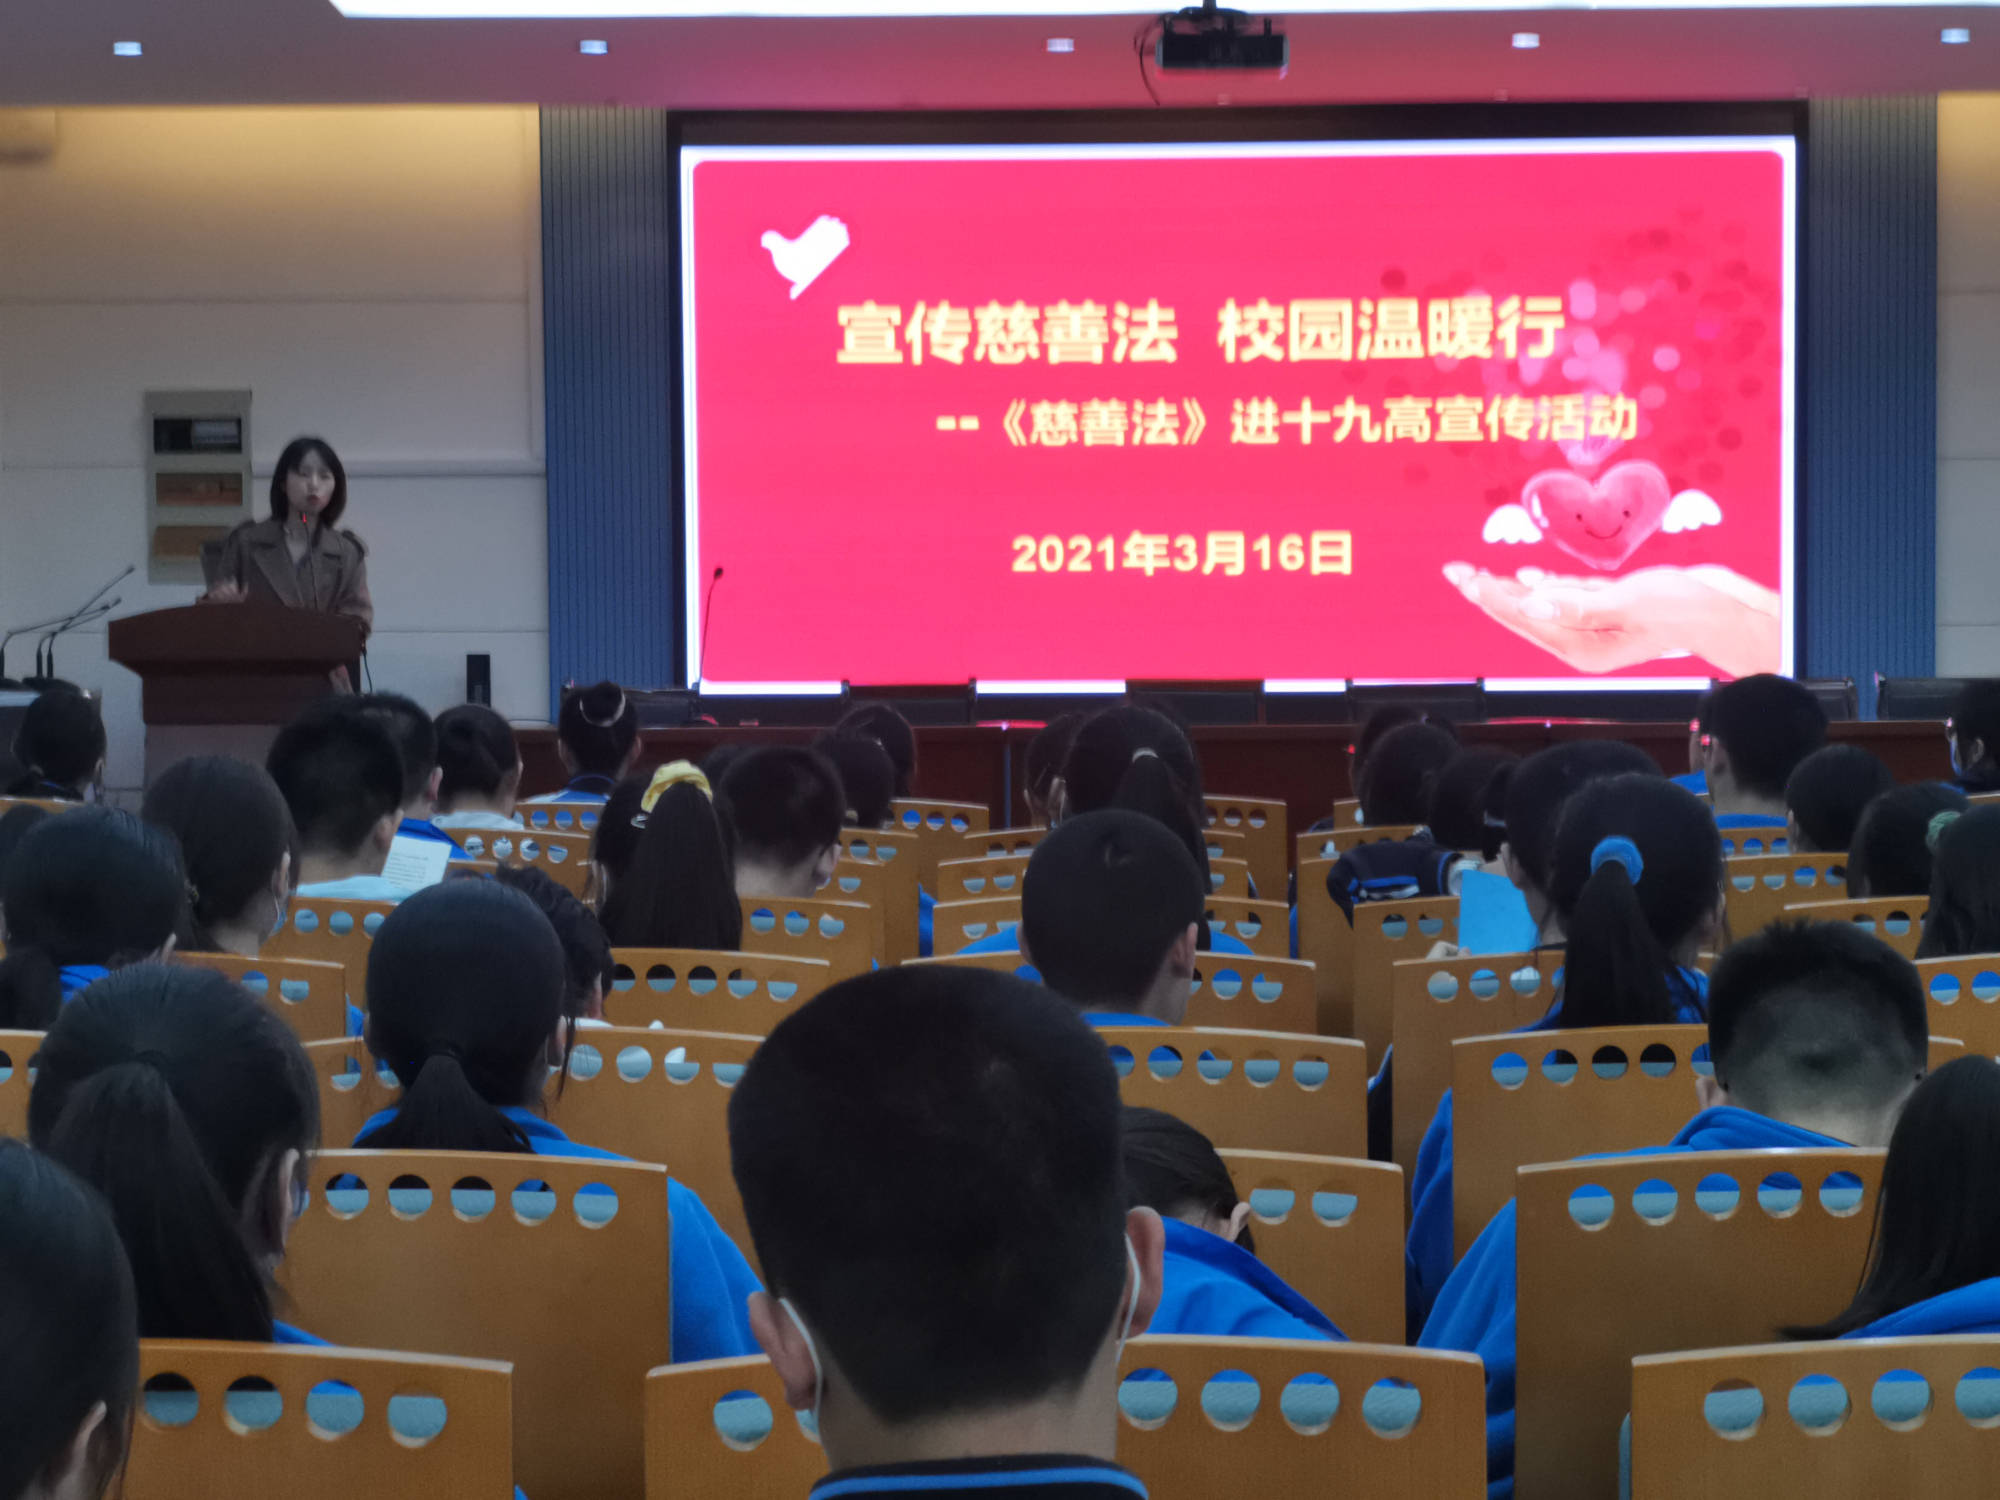 郑州公益慈善大讲堂系列活动进校园向中学生宣讲慈善法和公益理念